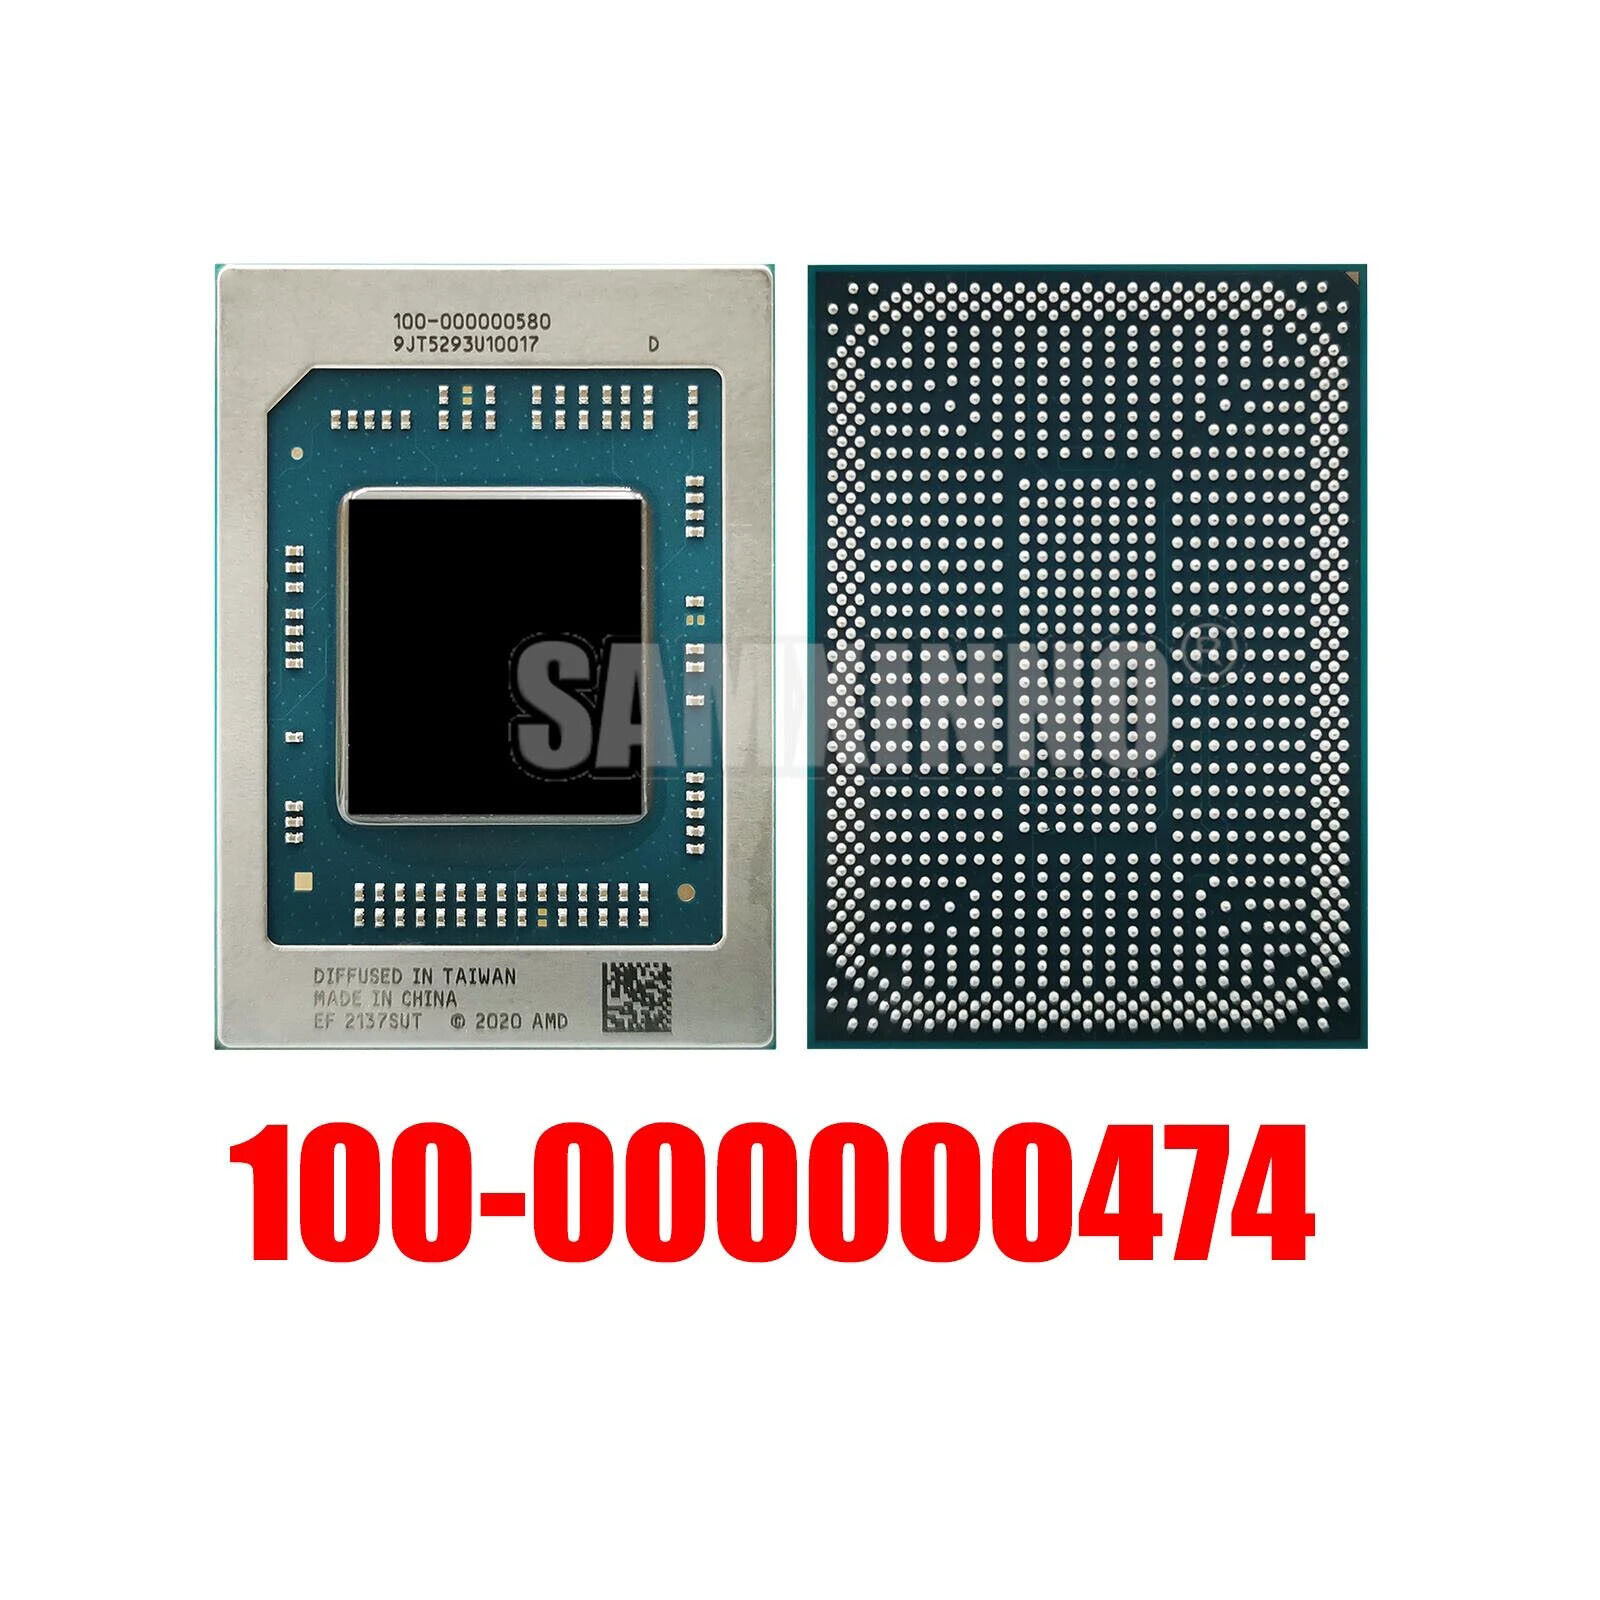 100% New 100-000000474 BGA CPU Chips